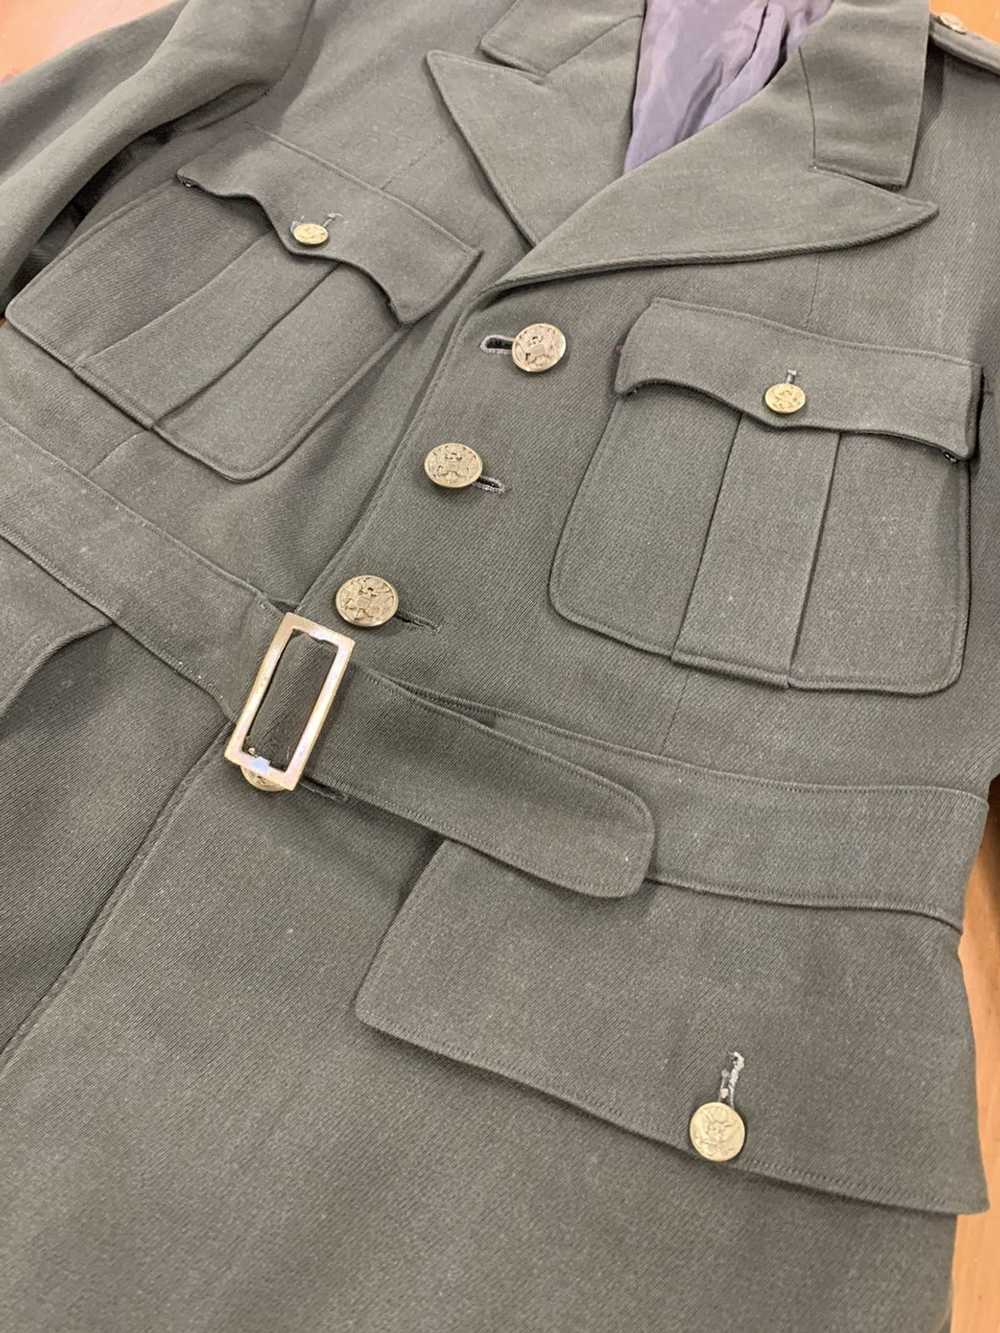 Vintage Vintage WW2 Belted Officers Uniform Jacket - image 2